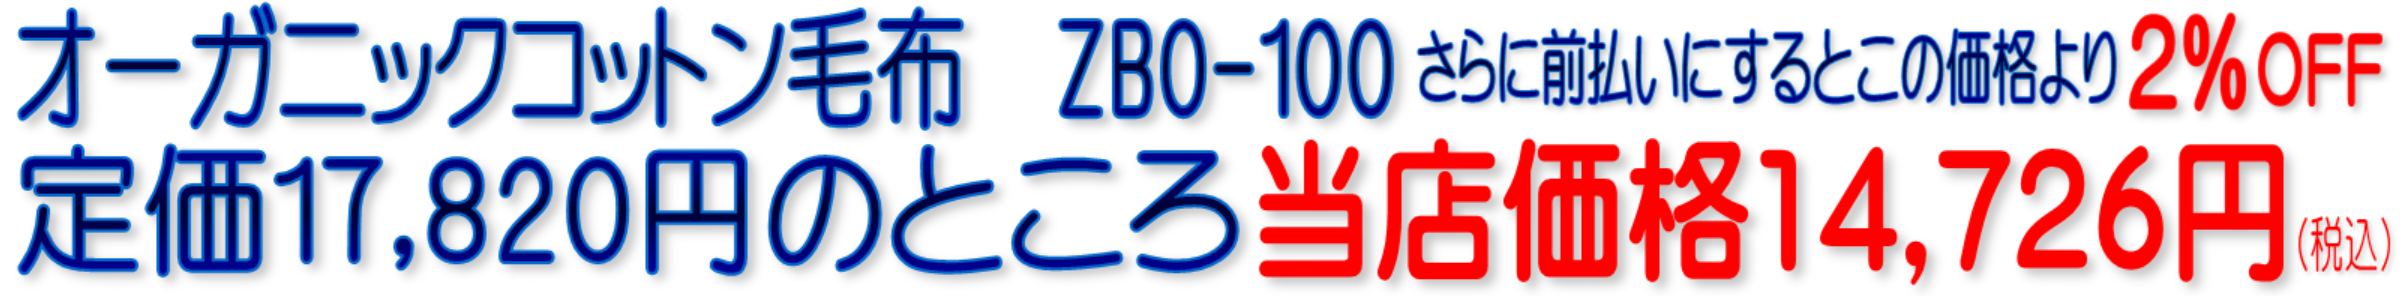 オーガニックコットン毛布 ZBO-100 ゼンケン